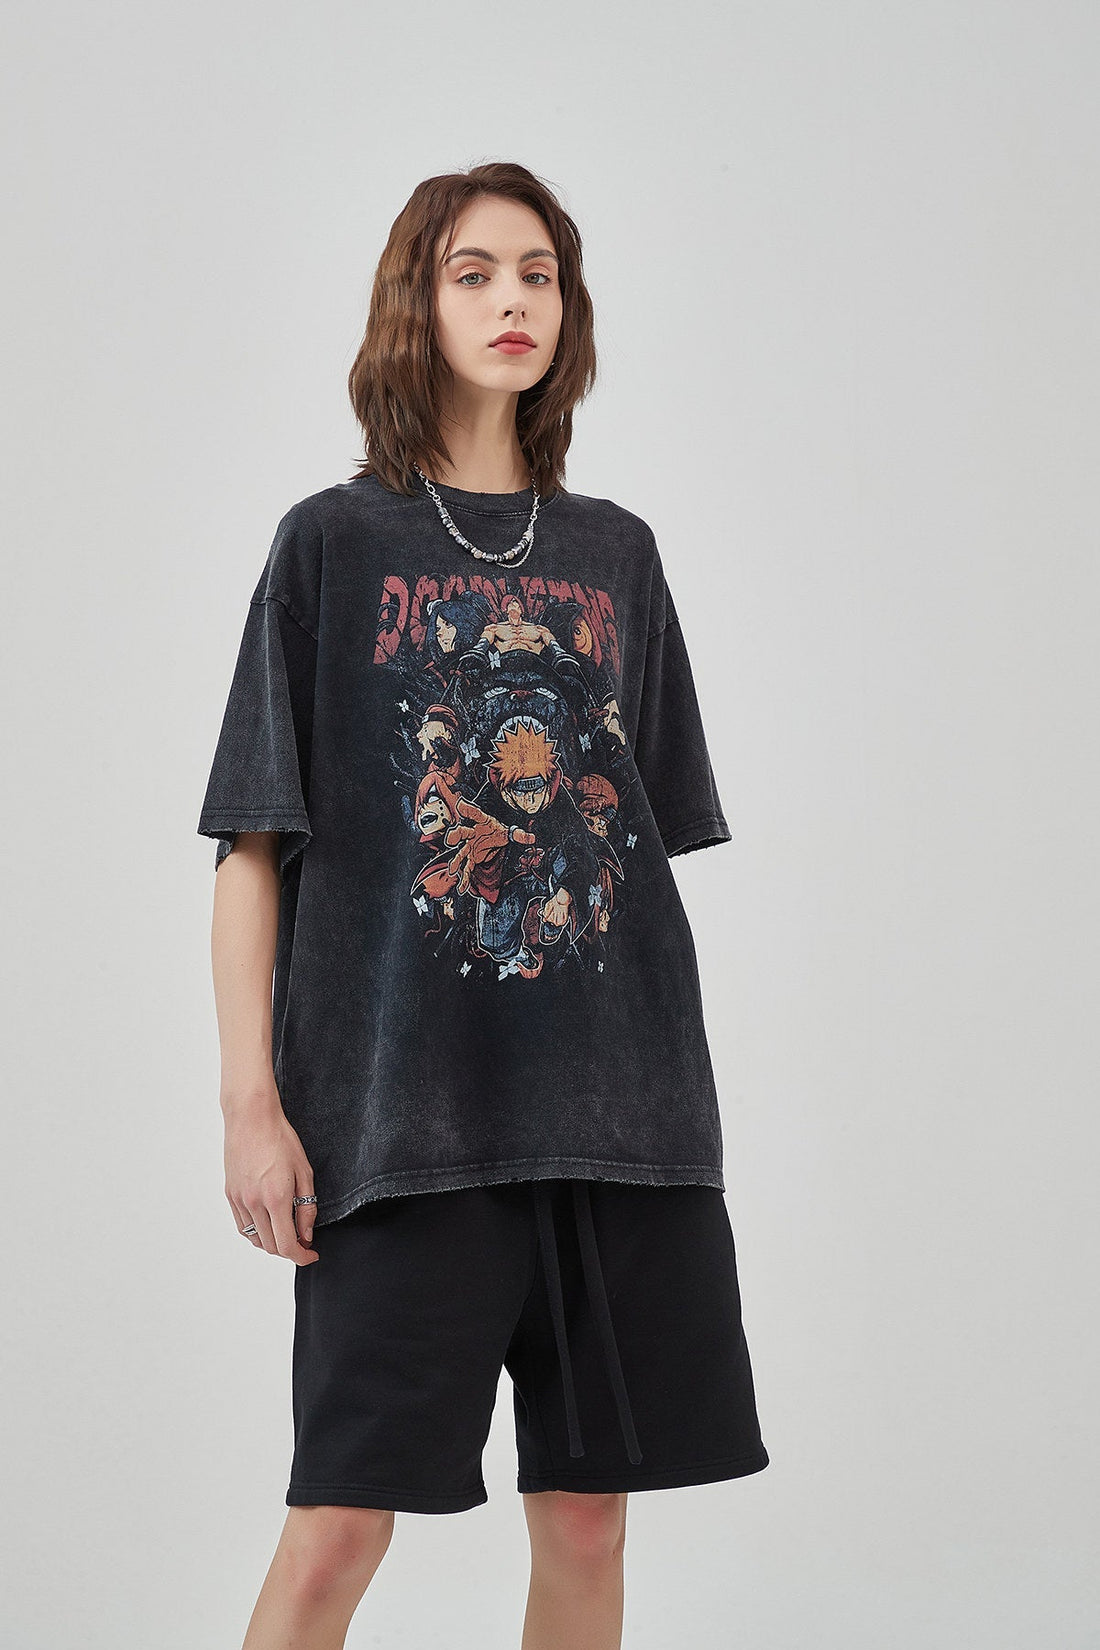 Naruto Print Cotton Women T-Shirt